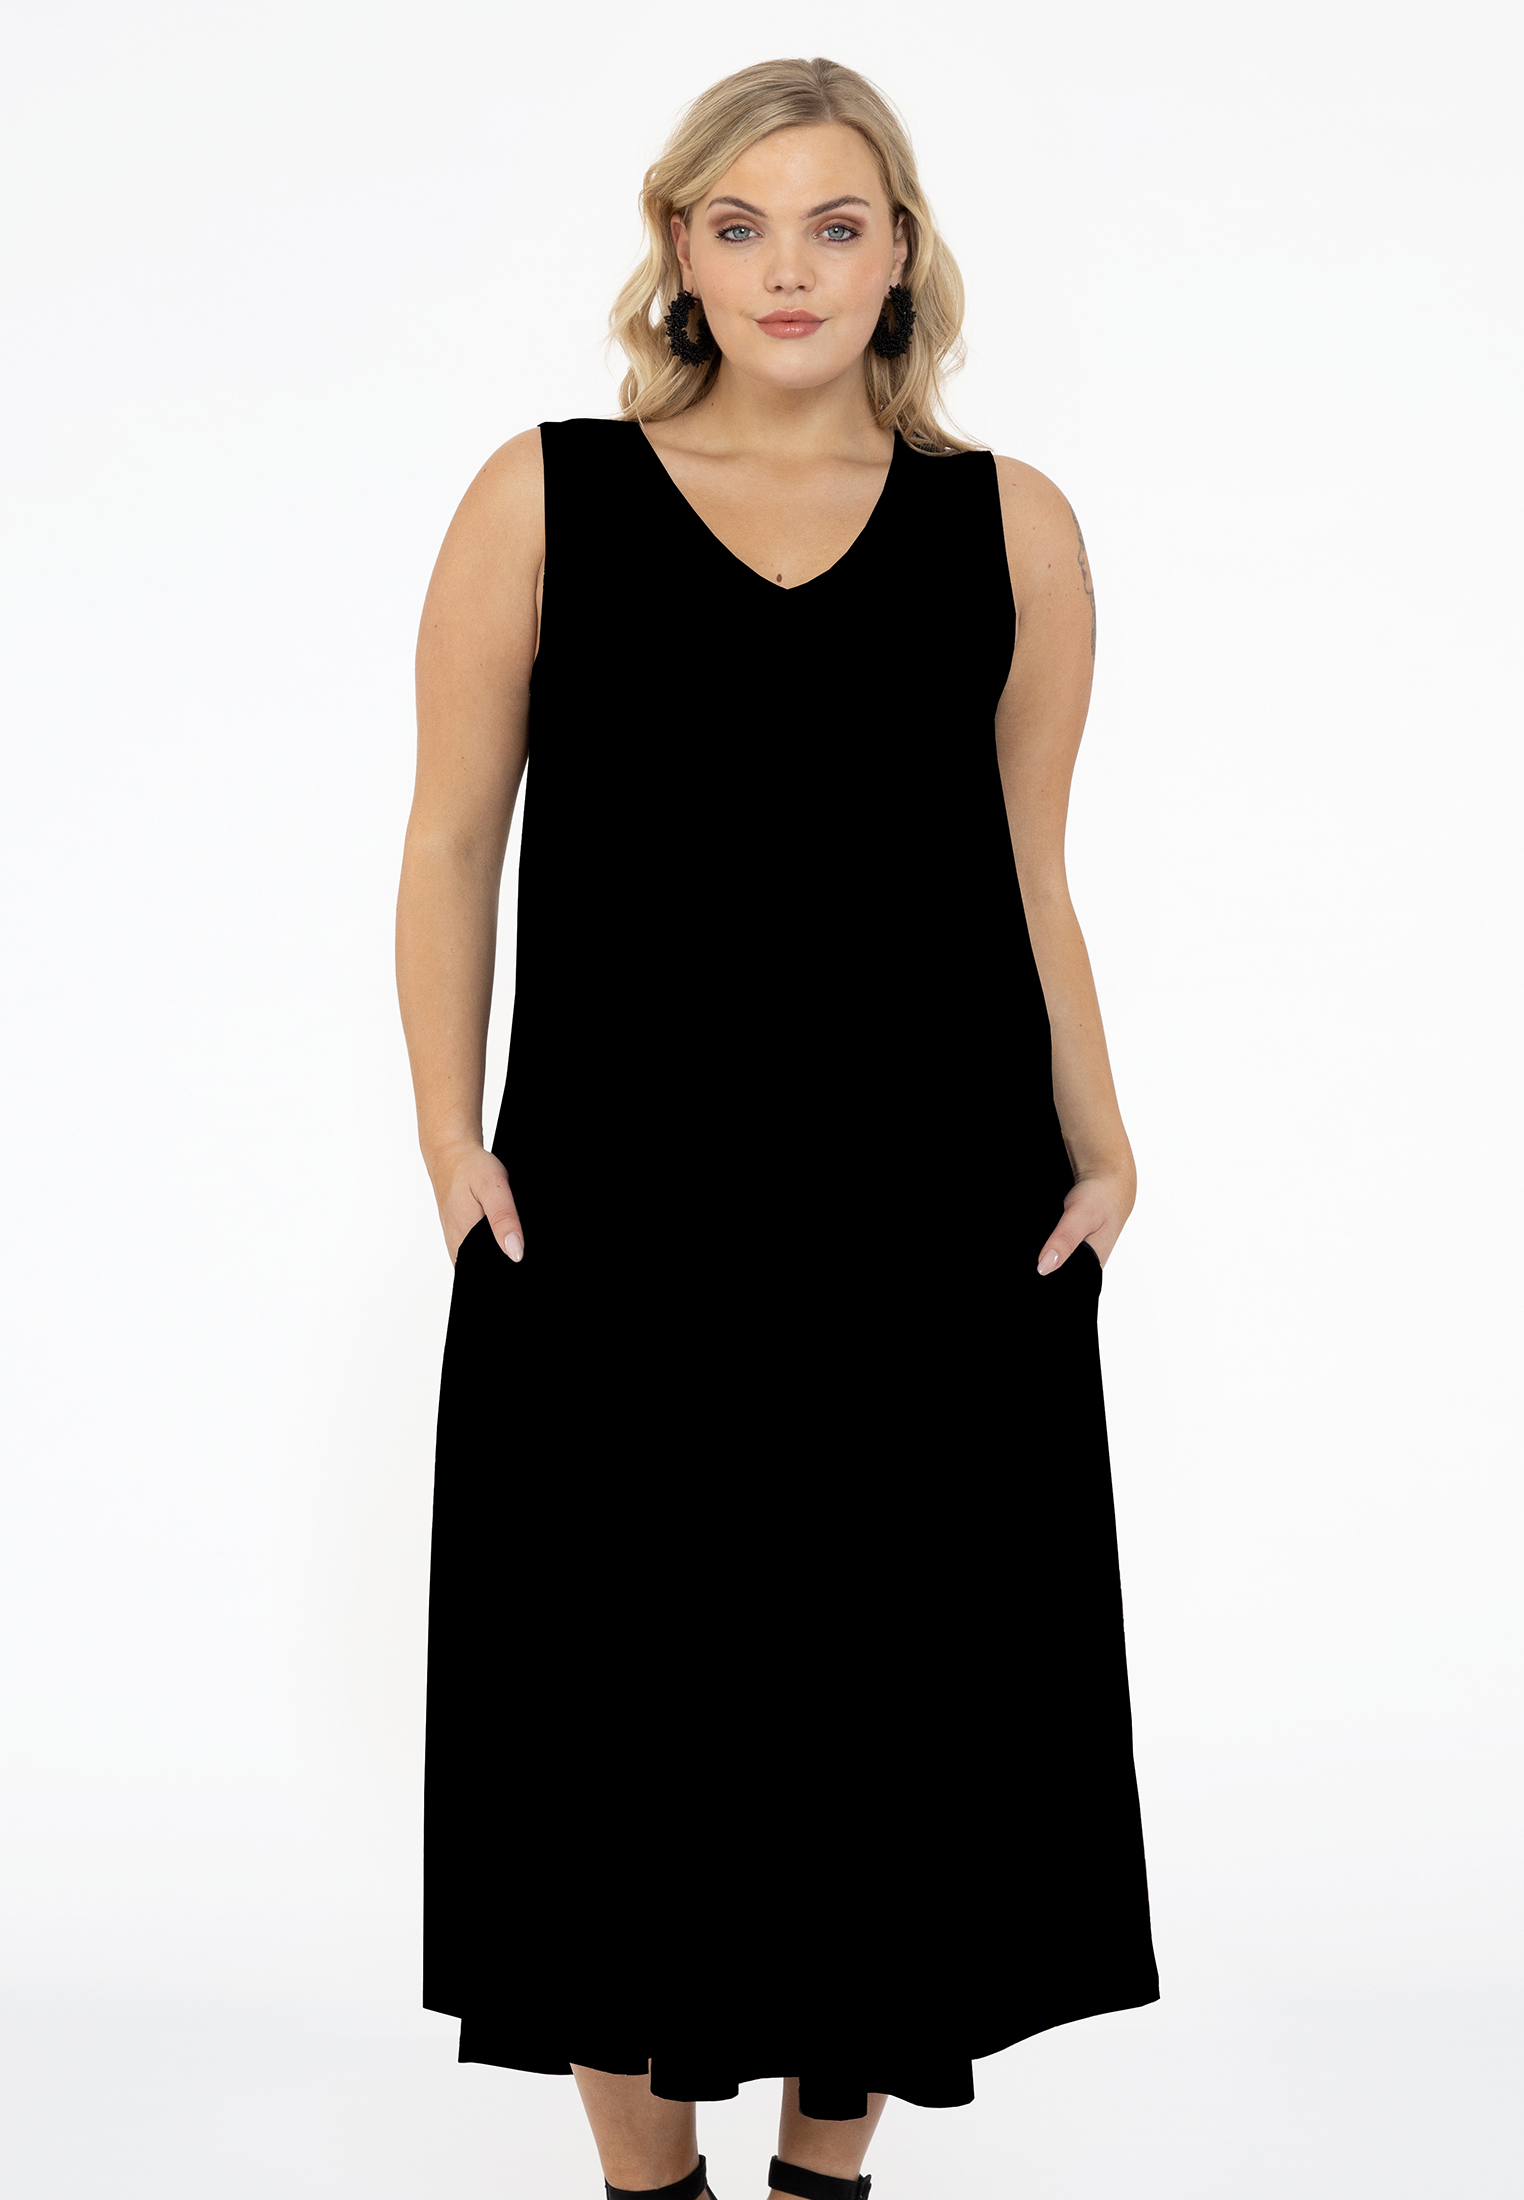 Mouwloze jurk A-lijn DOLCE 42/44 black